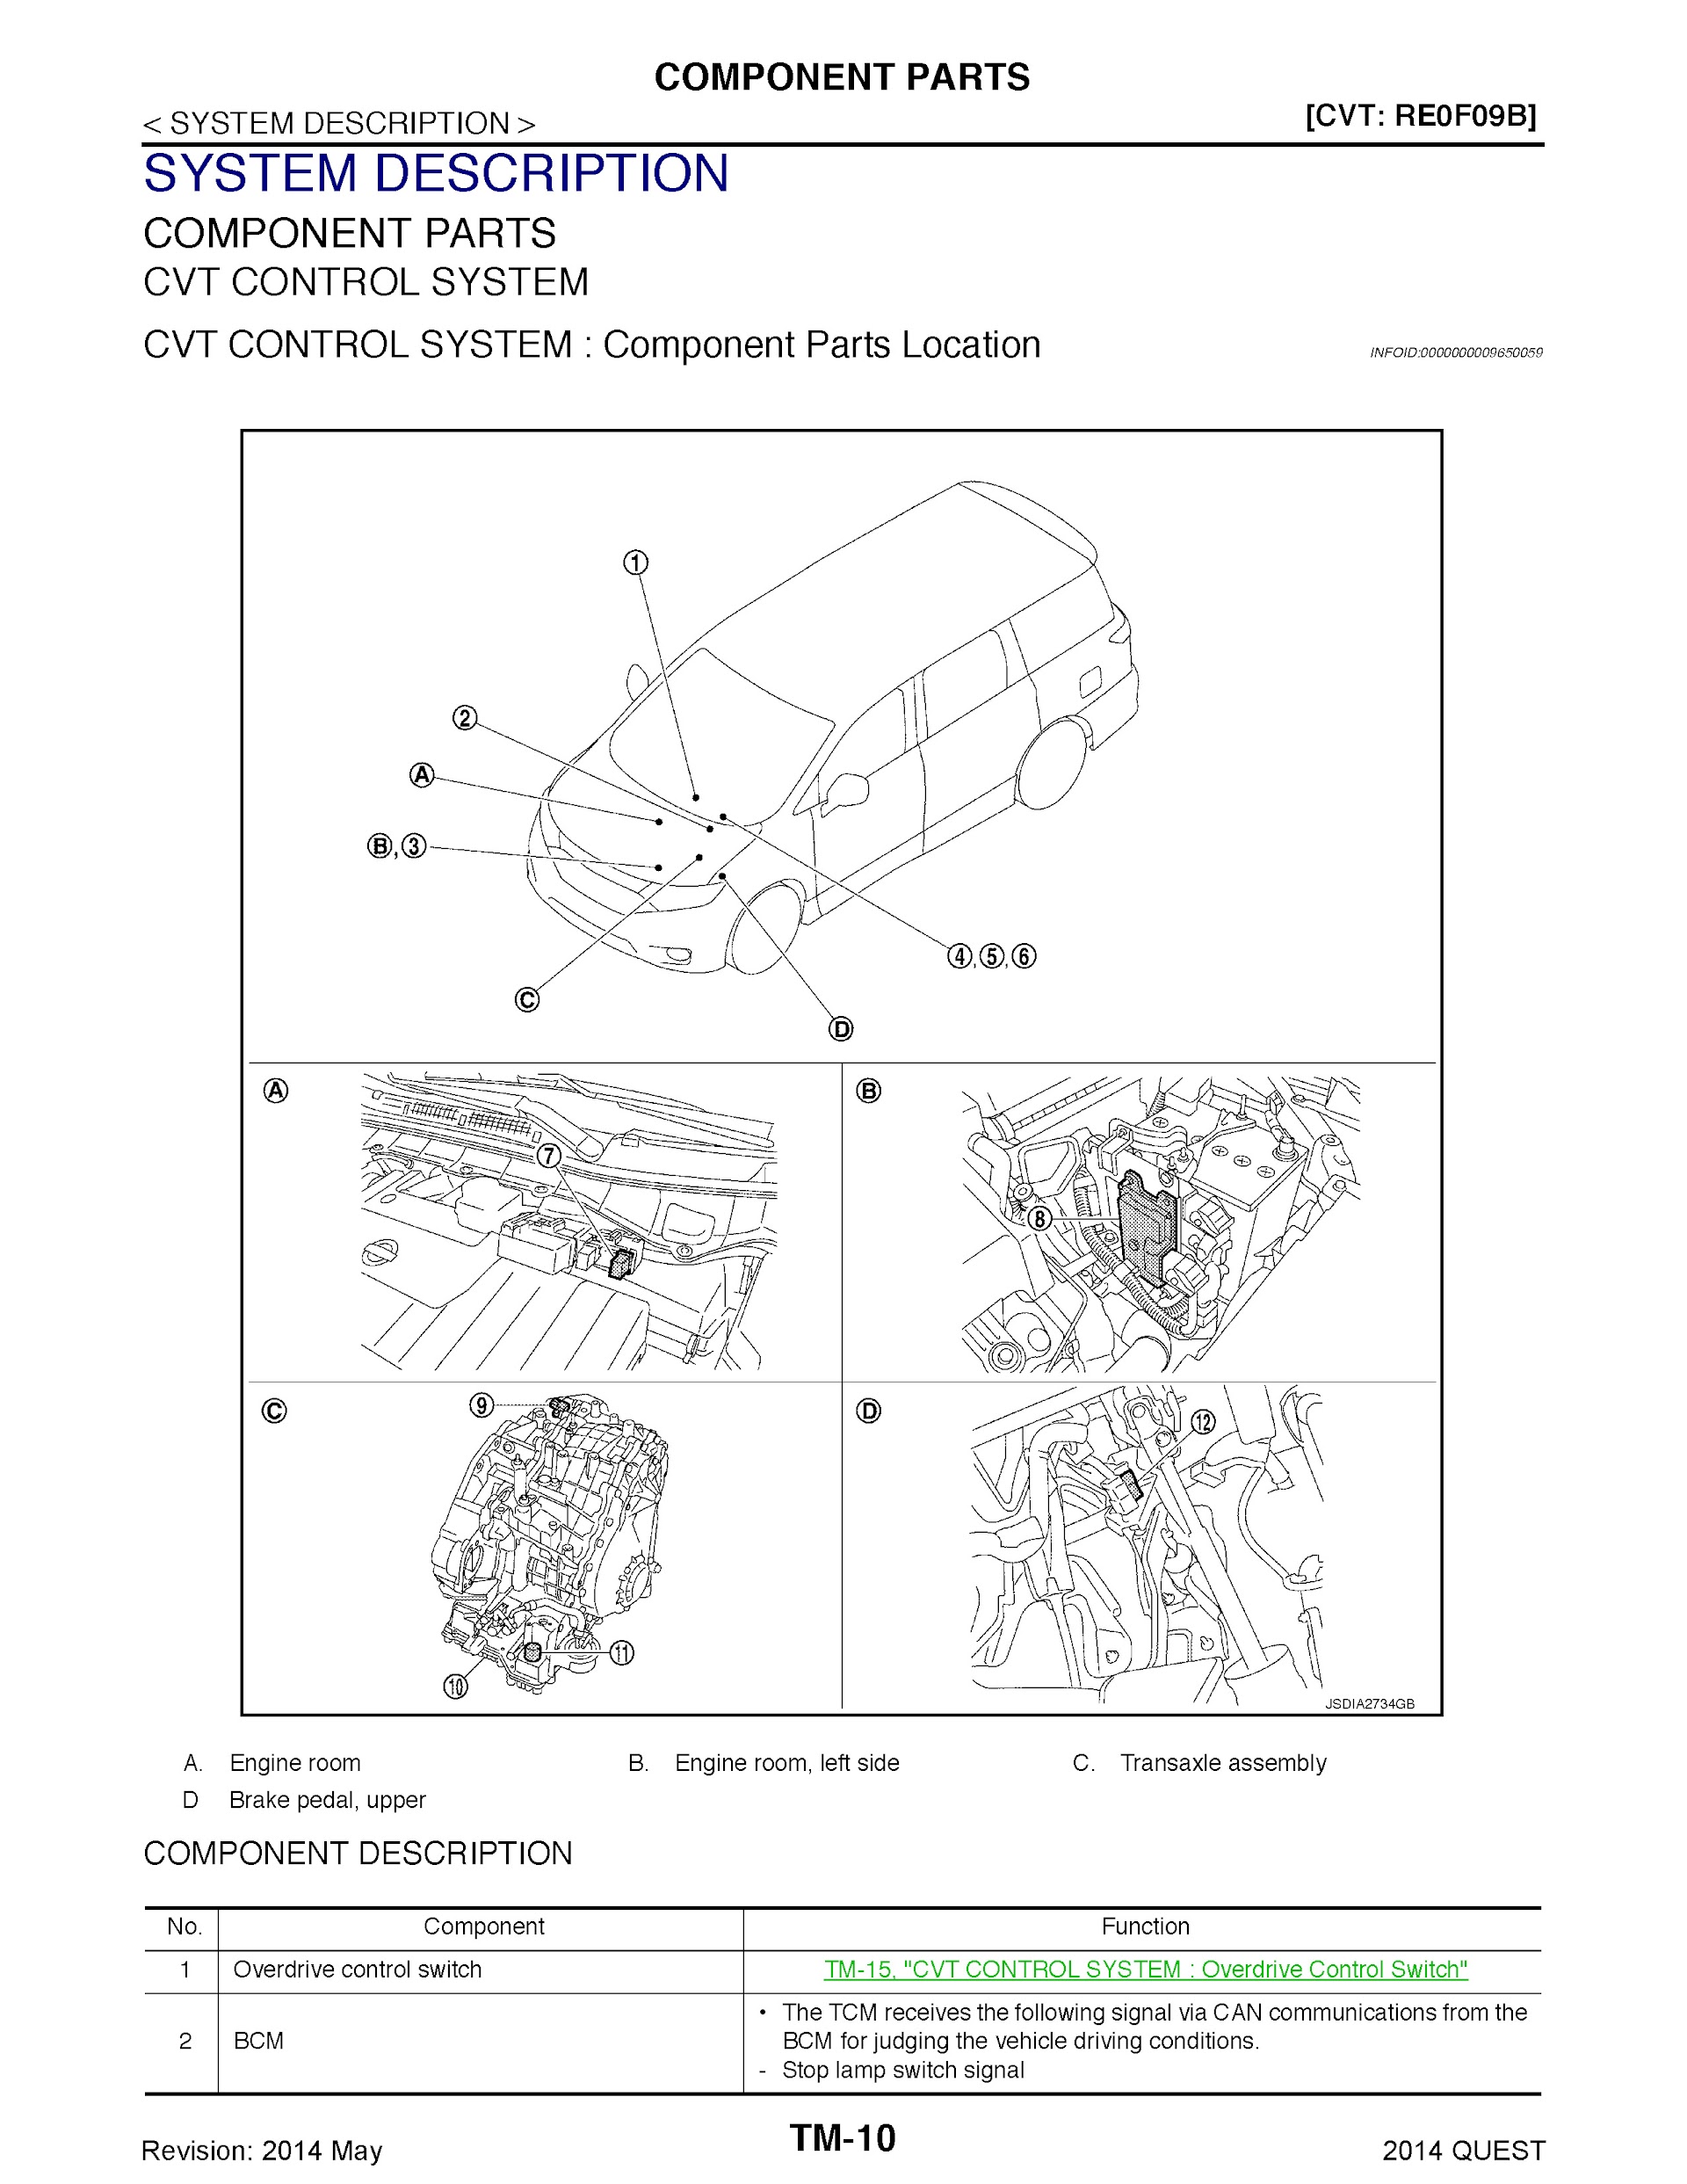 Download 2014 Nissan Quest Repair Manual.